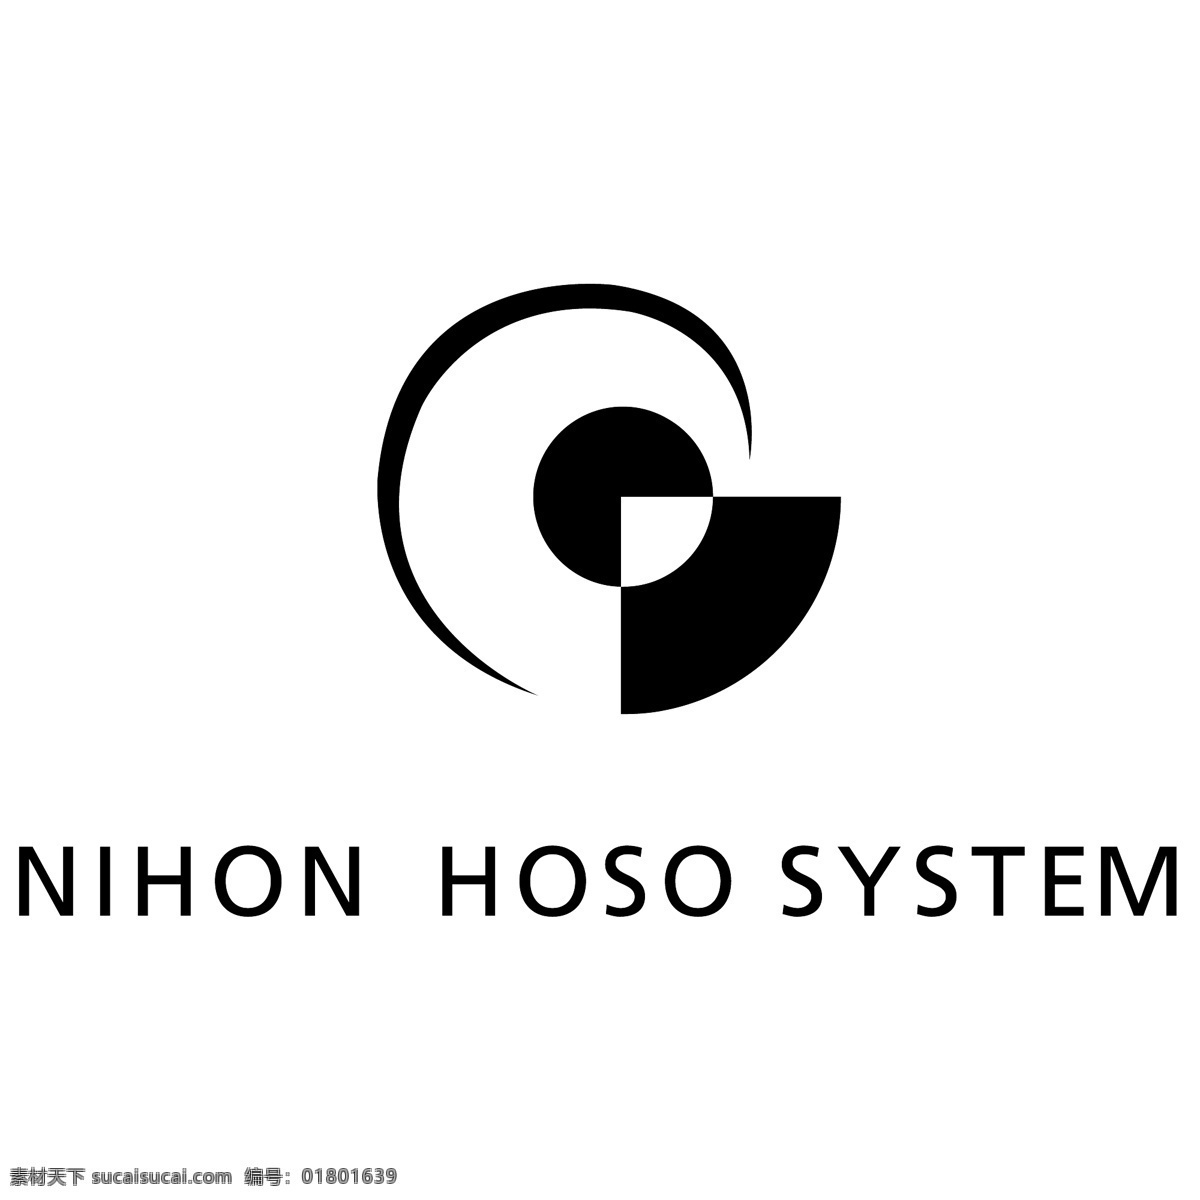 日本 广播系统 免费 标识 psd源文件 logo设计